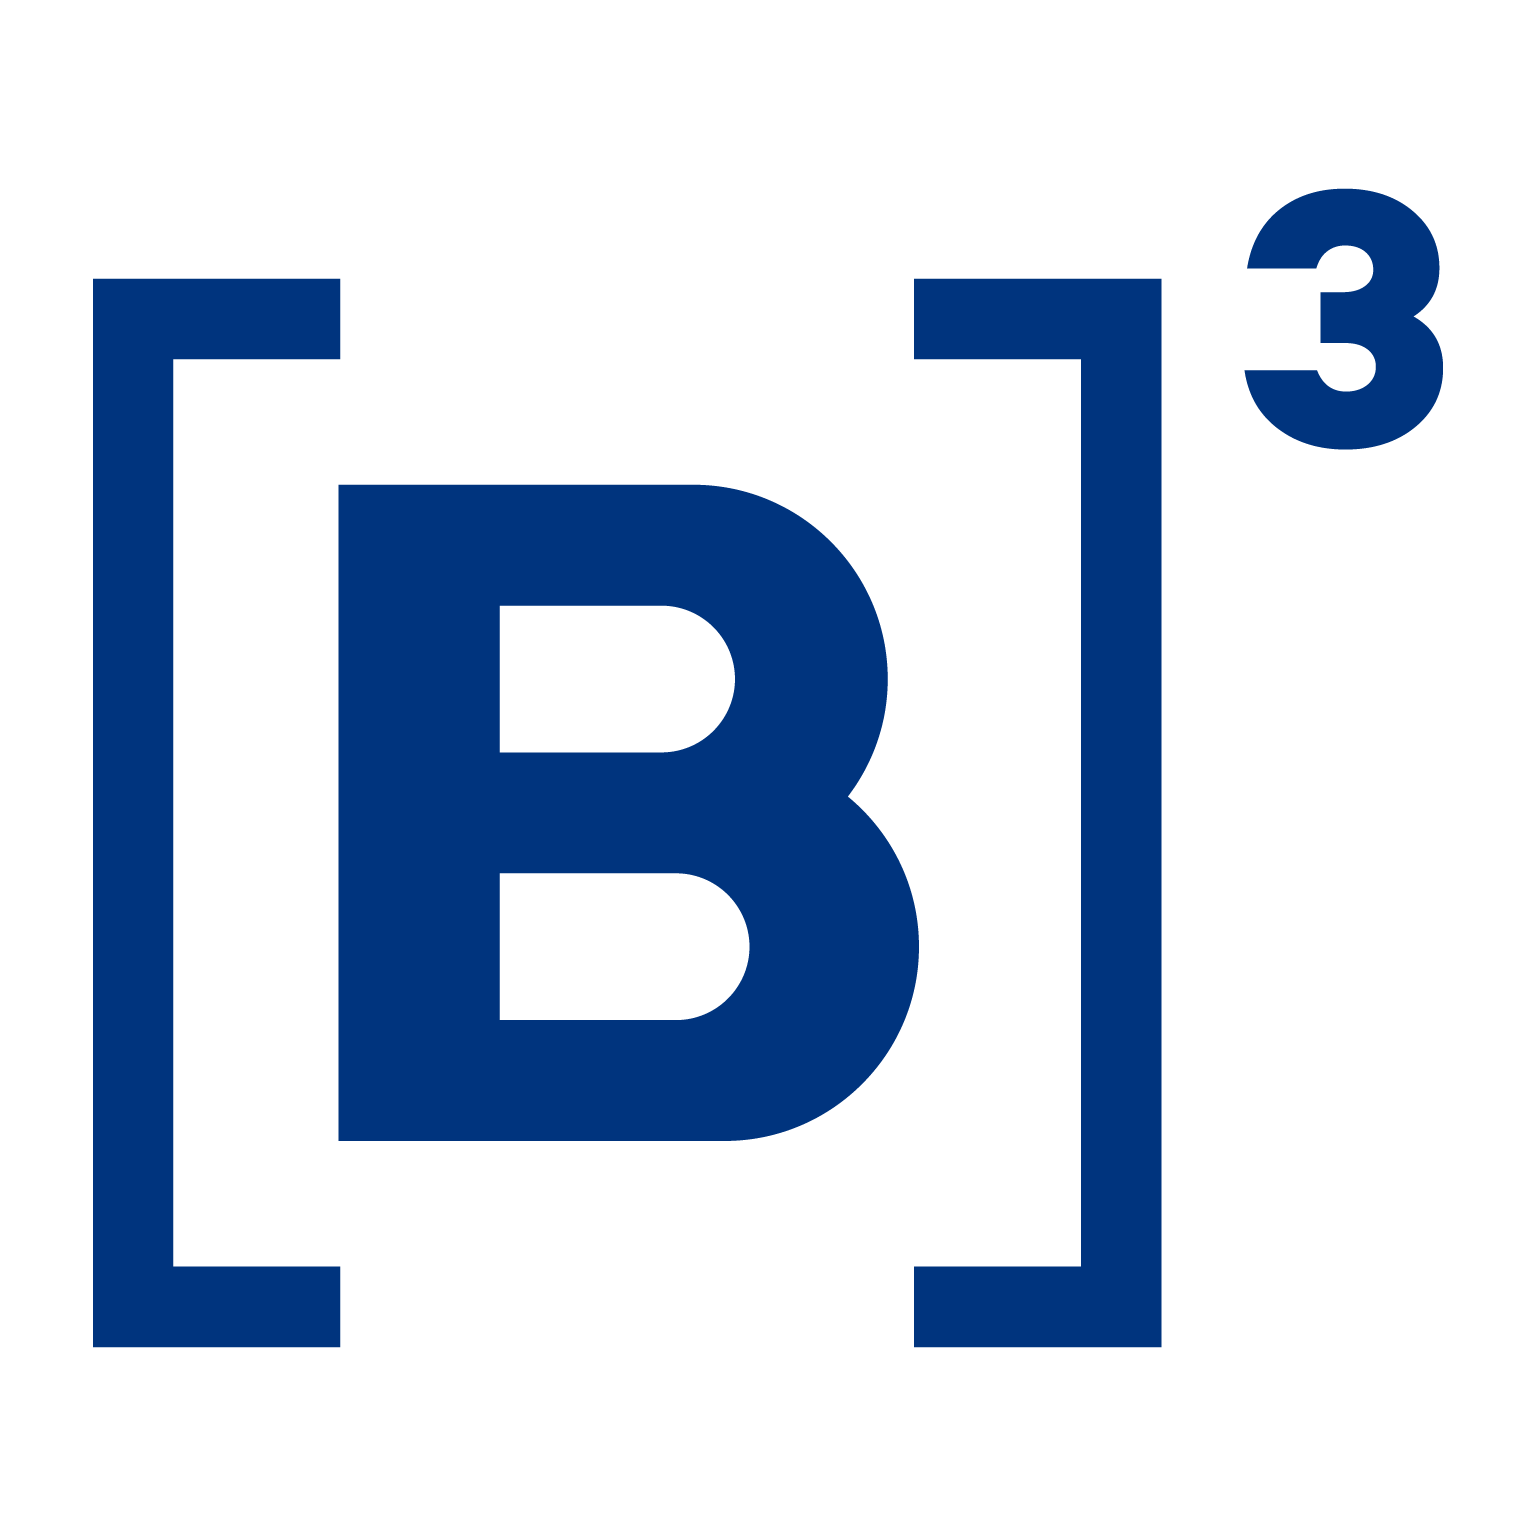 escudo b3 icone